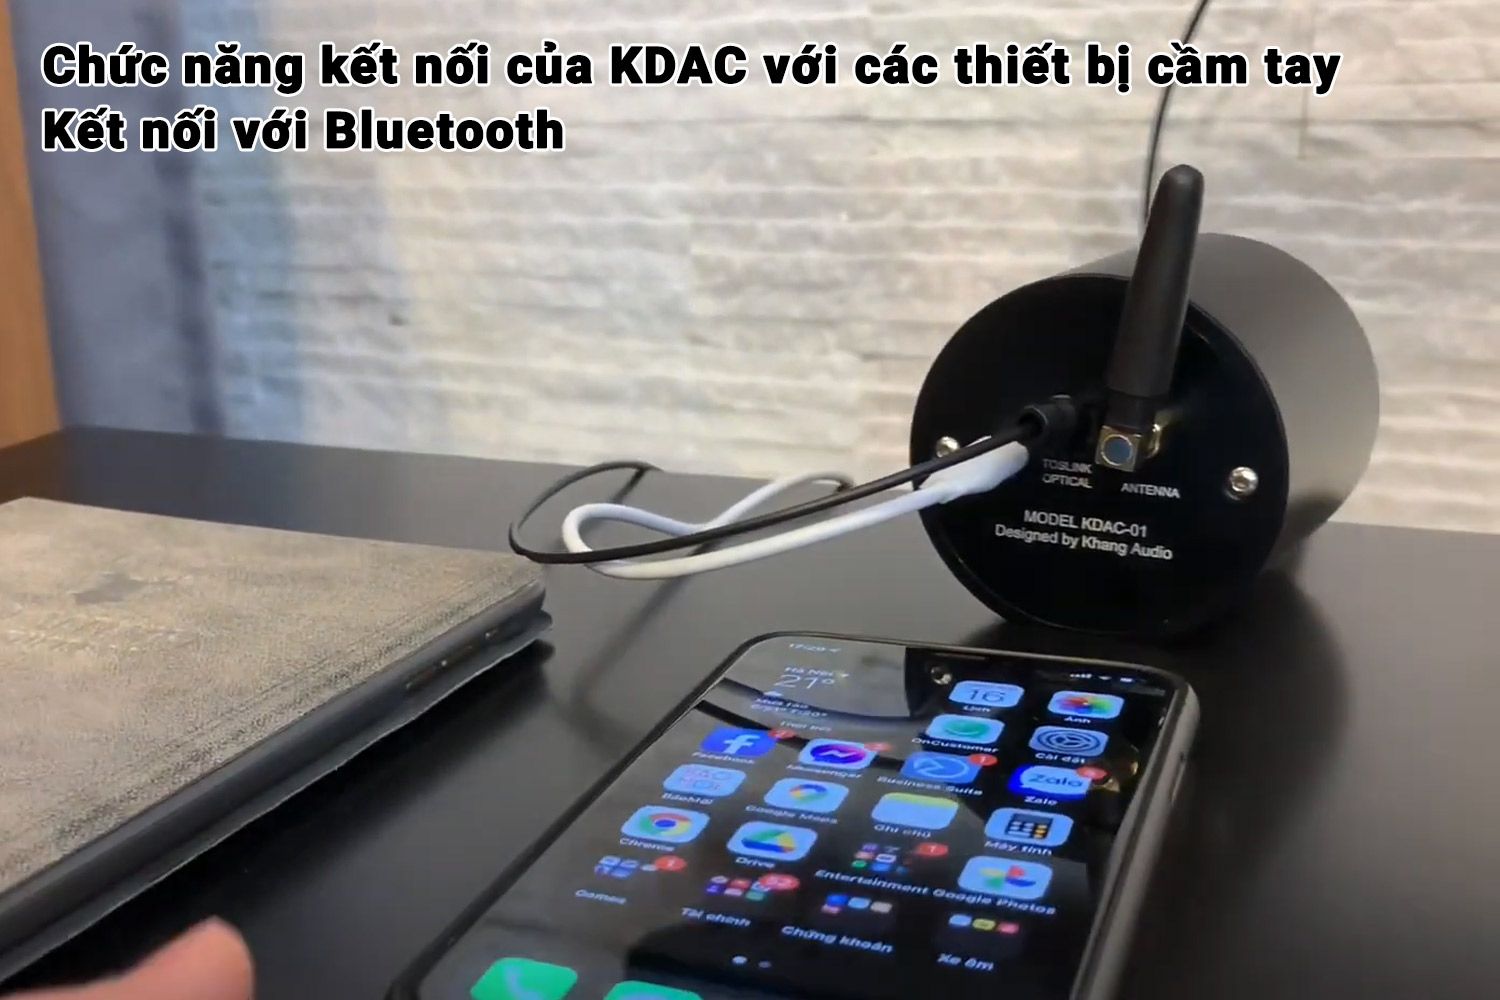 Hướng Dẫn Kết Nối KDAC01 Với Bluetooth Điện Thoại